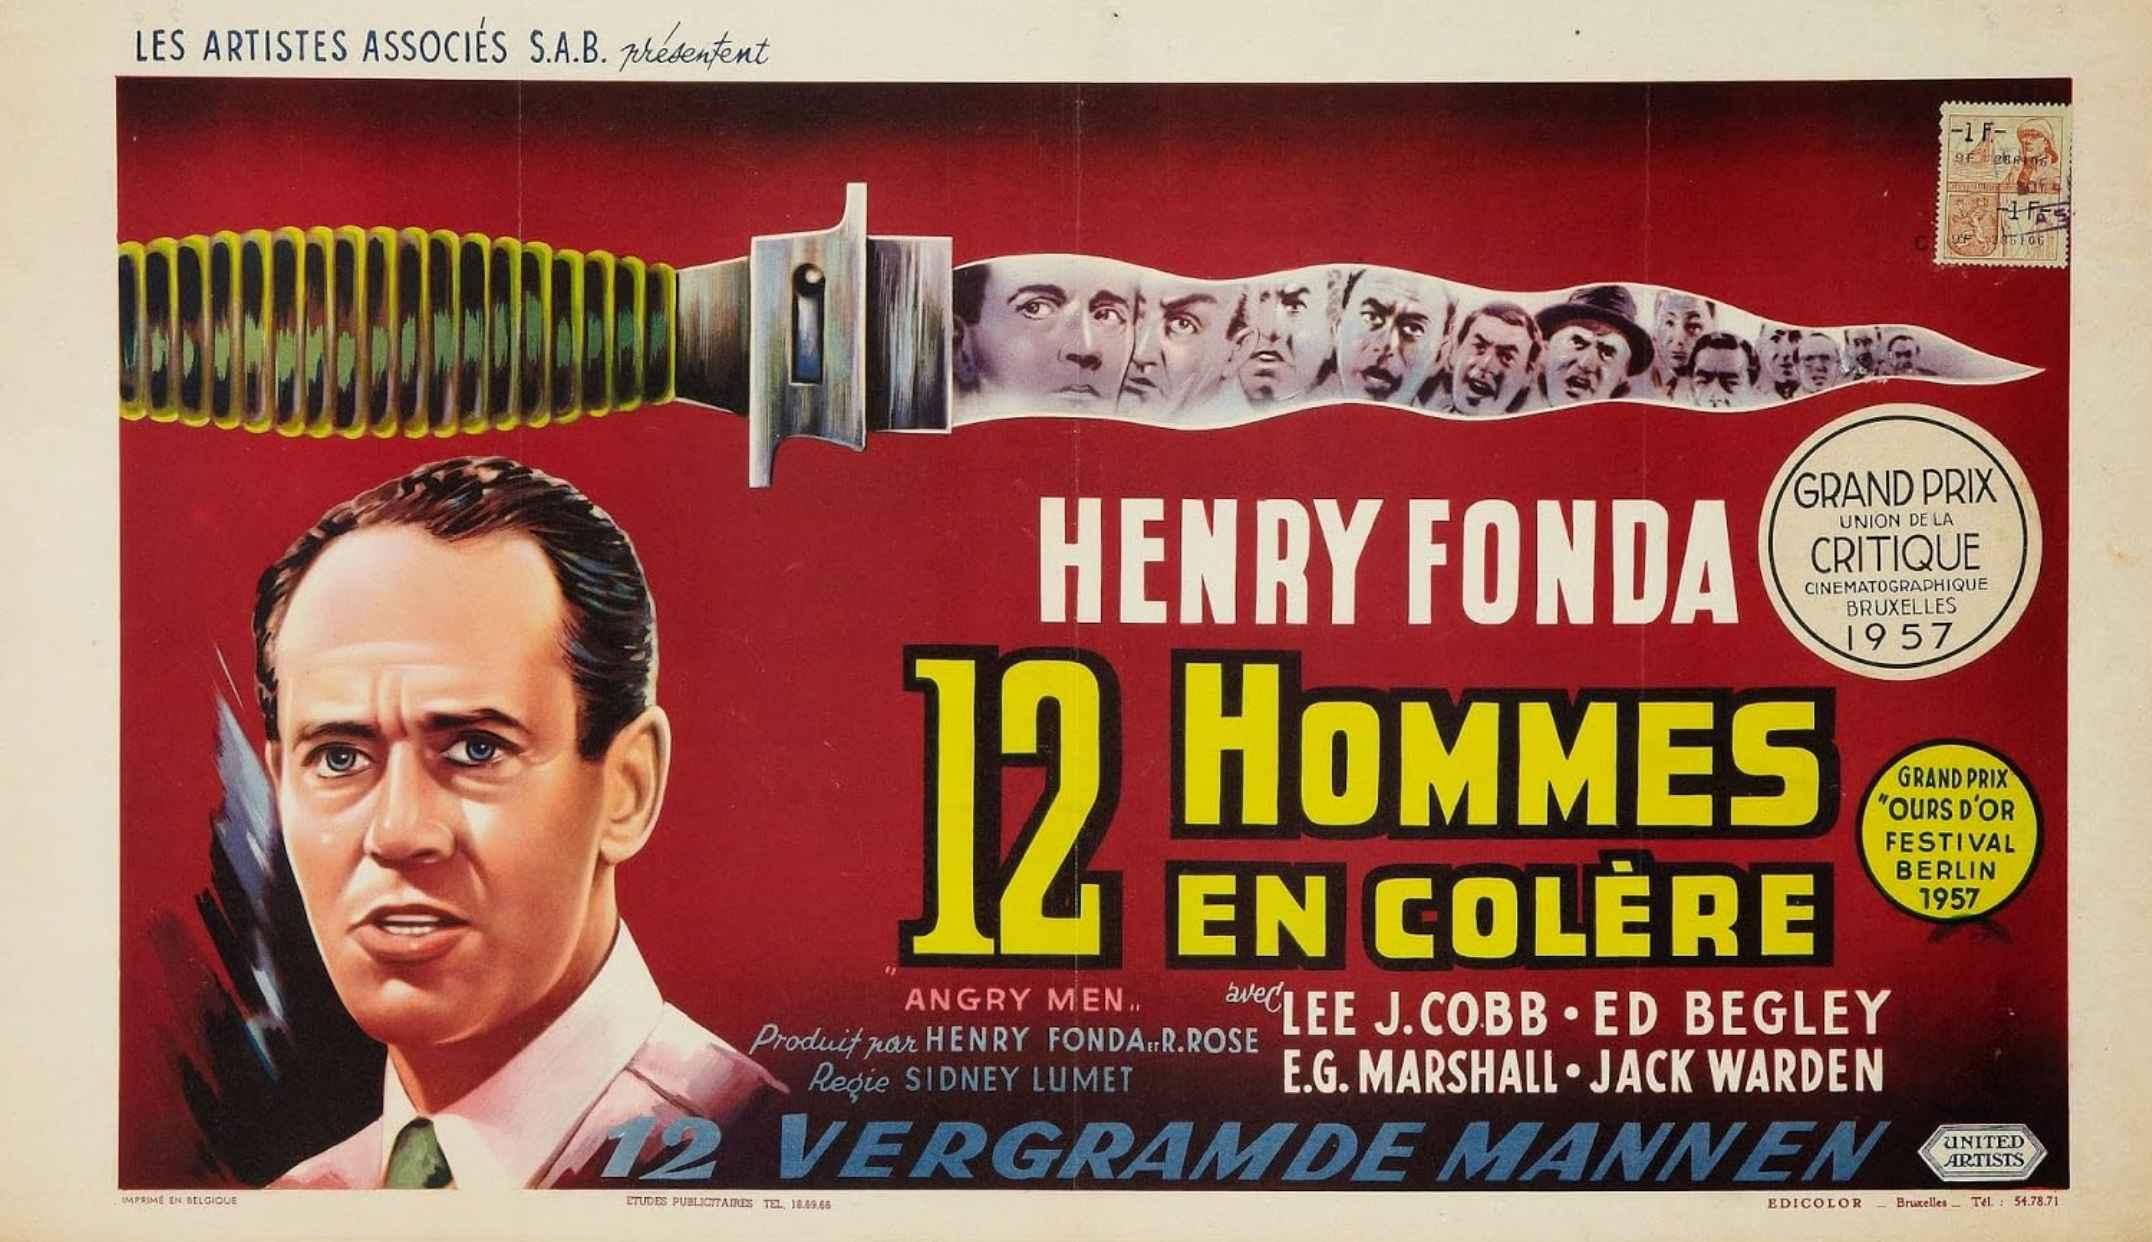 12 ANGRY MEN (1957) adalah satu dari 5 film top rating imdb yang bakal dikalahin sama Dune Part 2